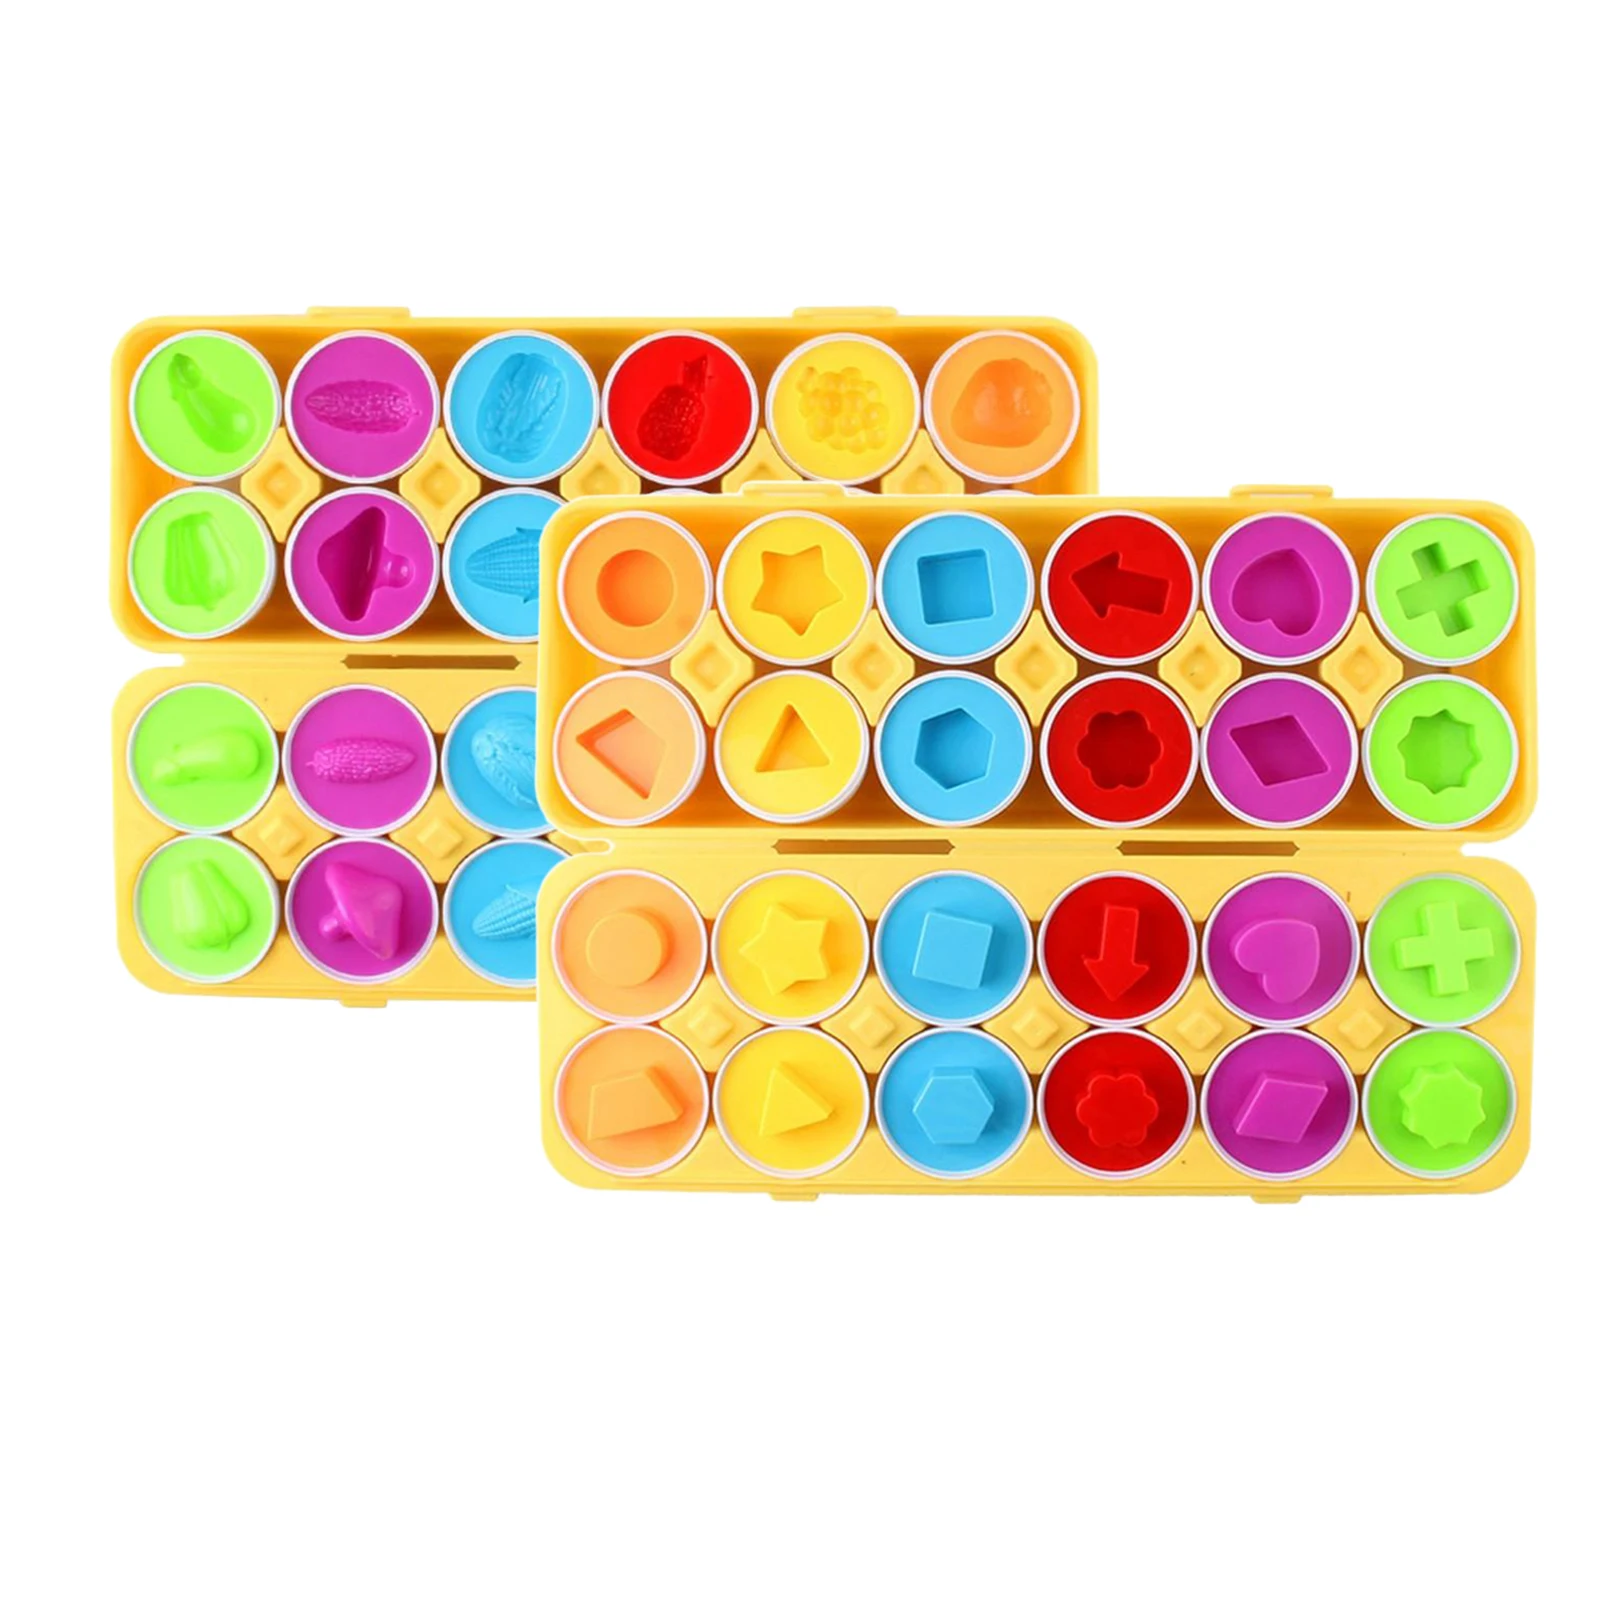 12 шт./компл. одинаковая в форме яйца для сортировки и Цвет Recoginition игрушки | Игрушки